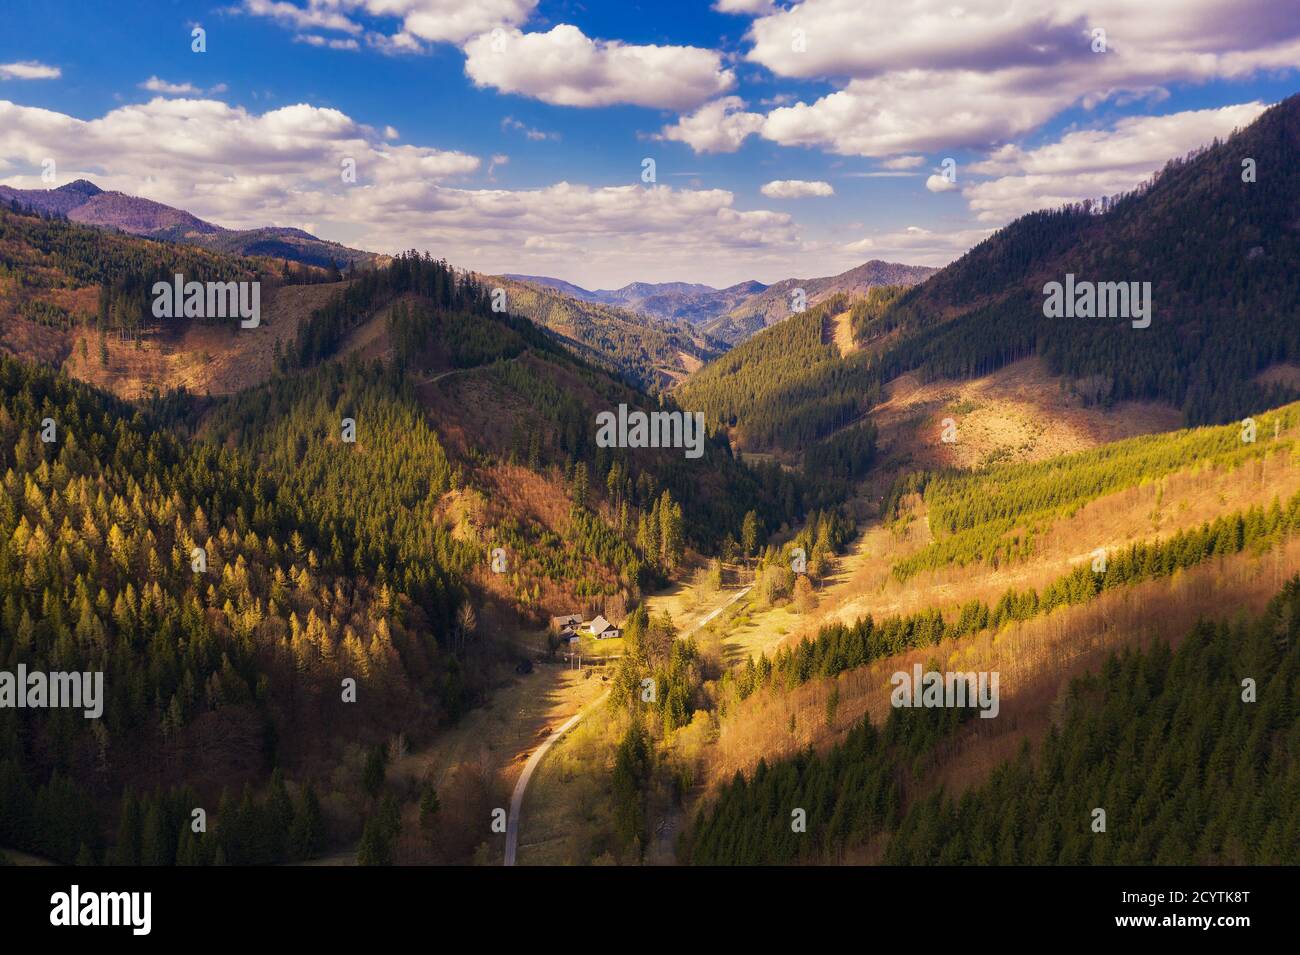 Vue aérienne d'une vallée dans la grande montagne de Fatra en Slovaquie Banque D'Images